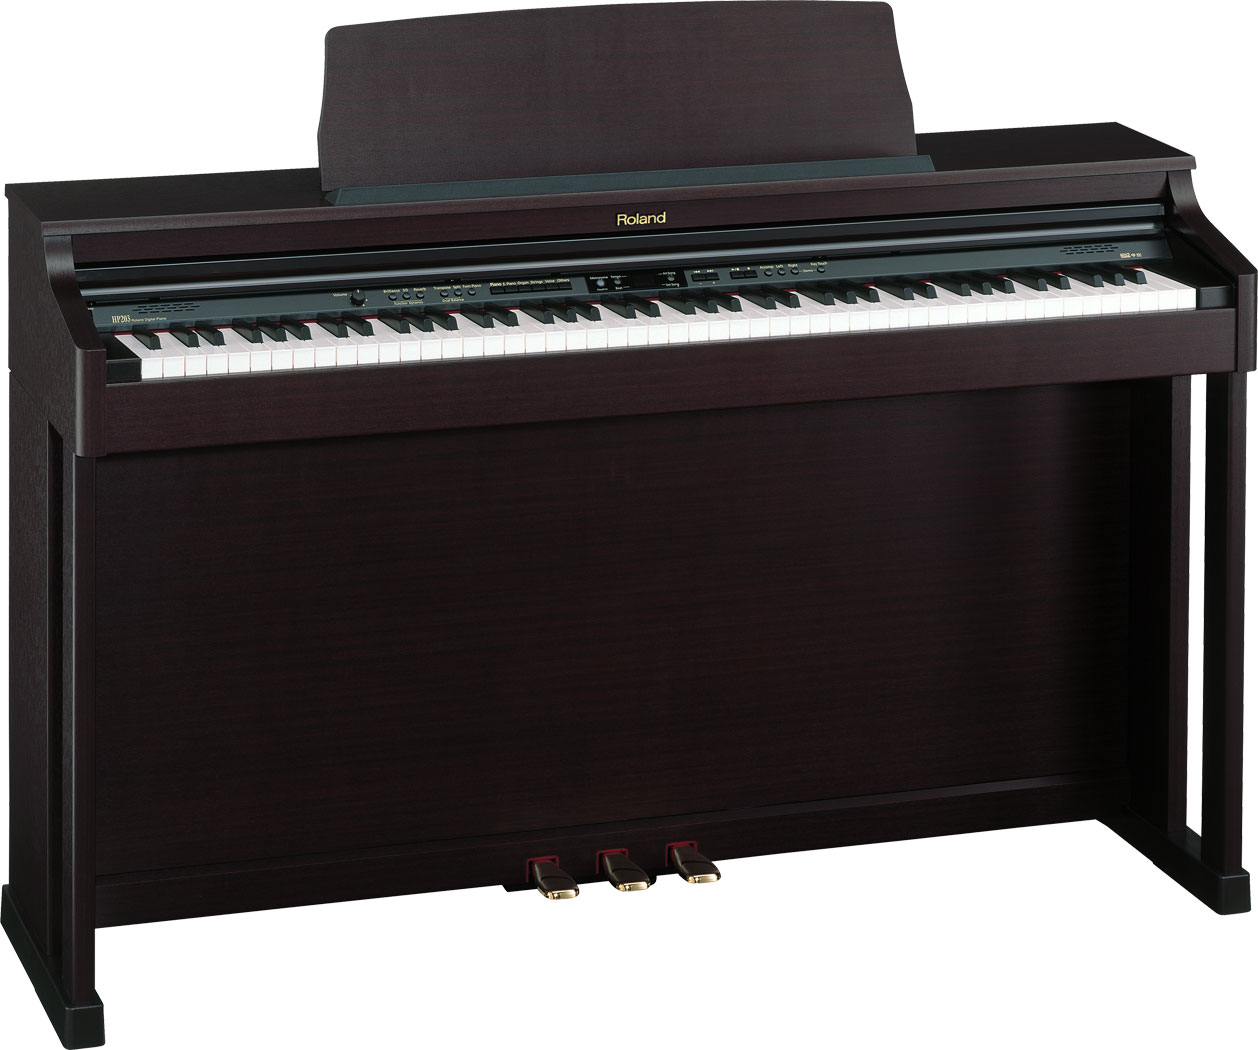 ローランド 電子ピアノ HP5000S - 鍵盤楽器、ピアノ